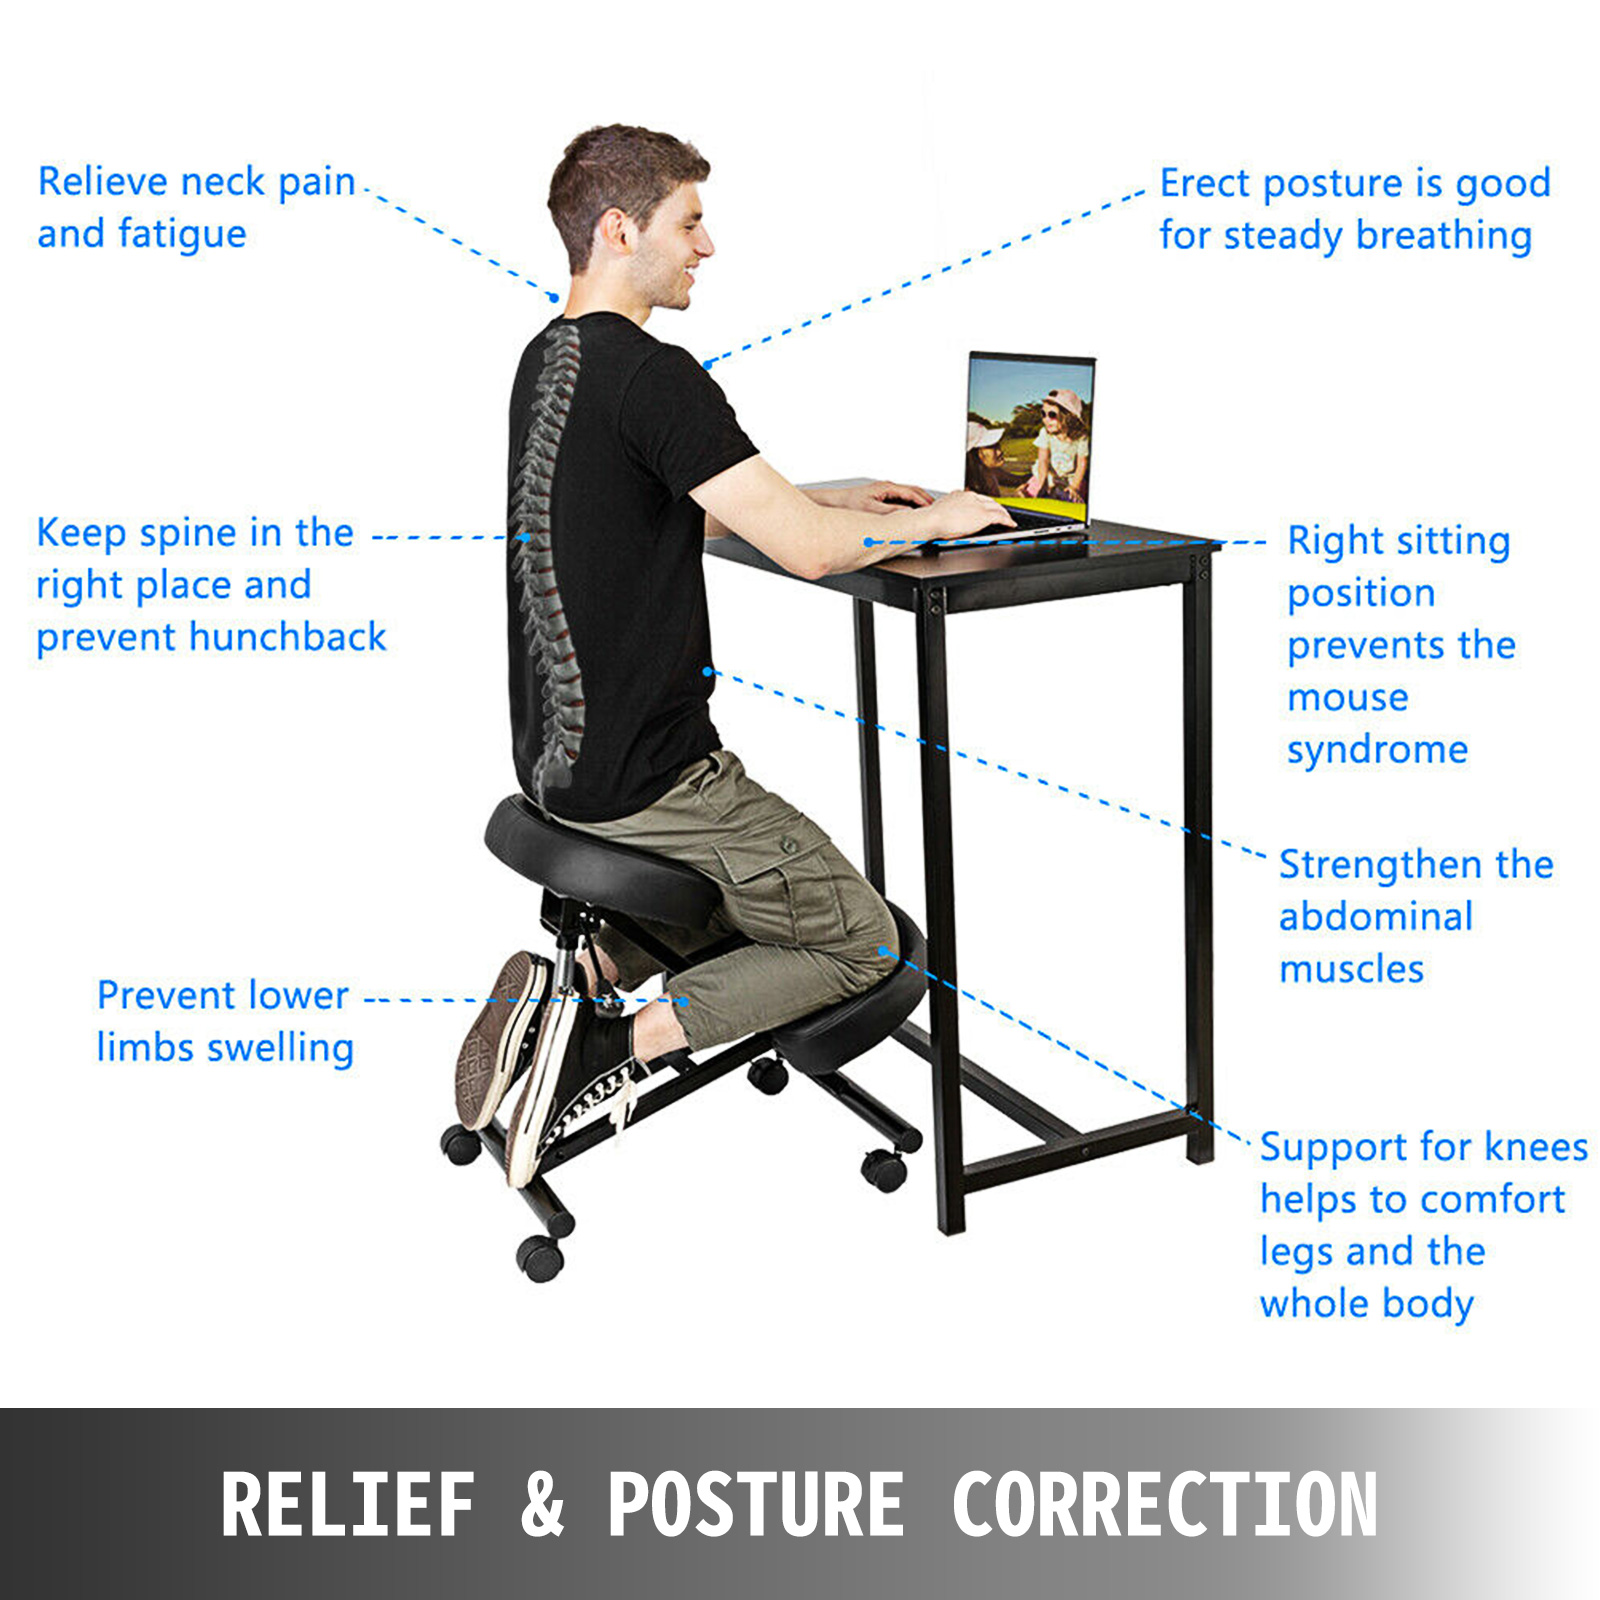 Mesa auxiliar de altura ajustable Escritorio ajustable para sentarse para  ponerse de pie, escritorio para oficina en casa, mesa de computadora, mesa